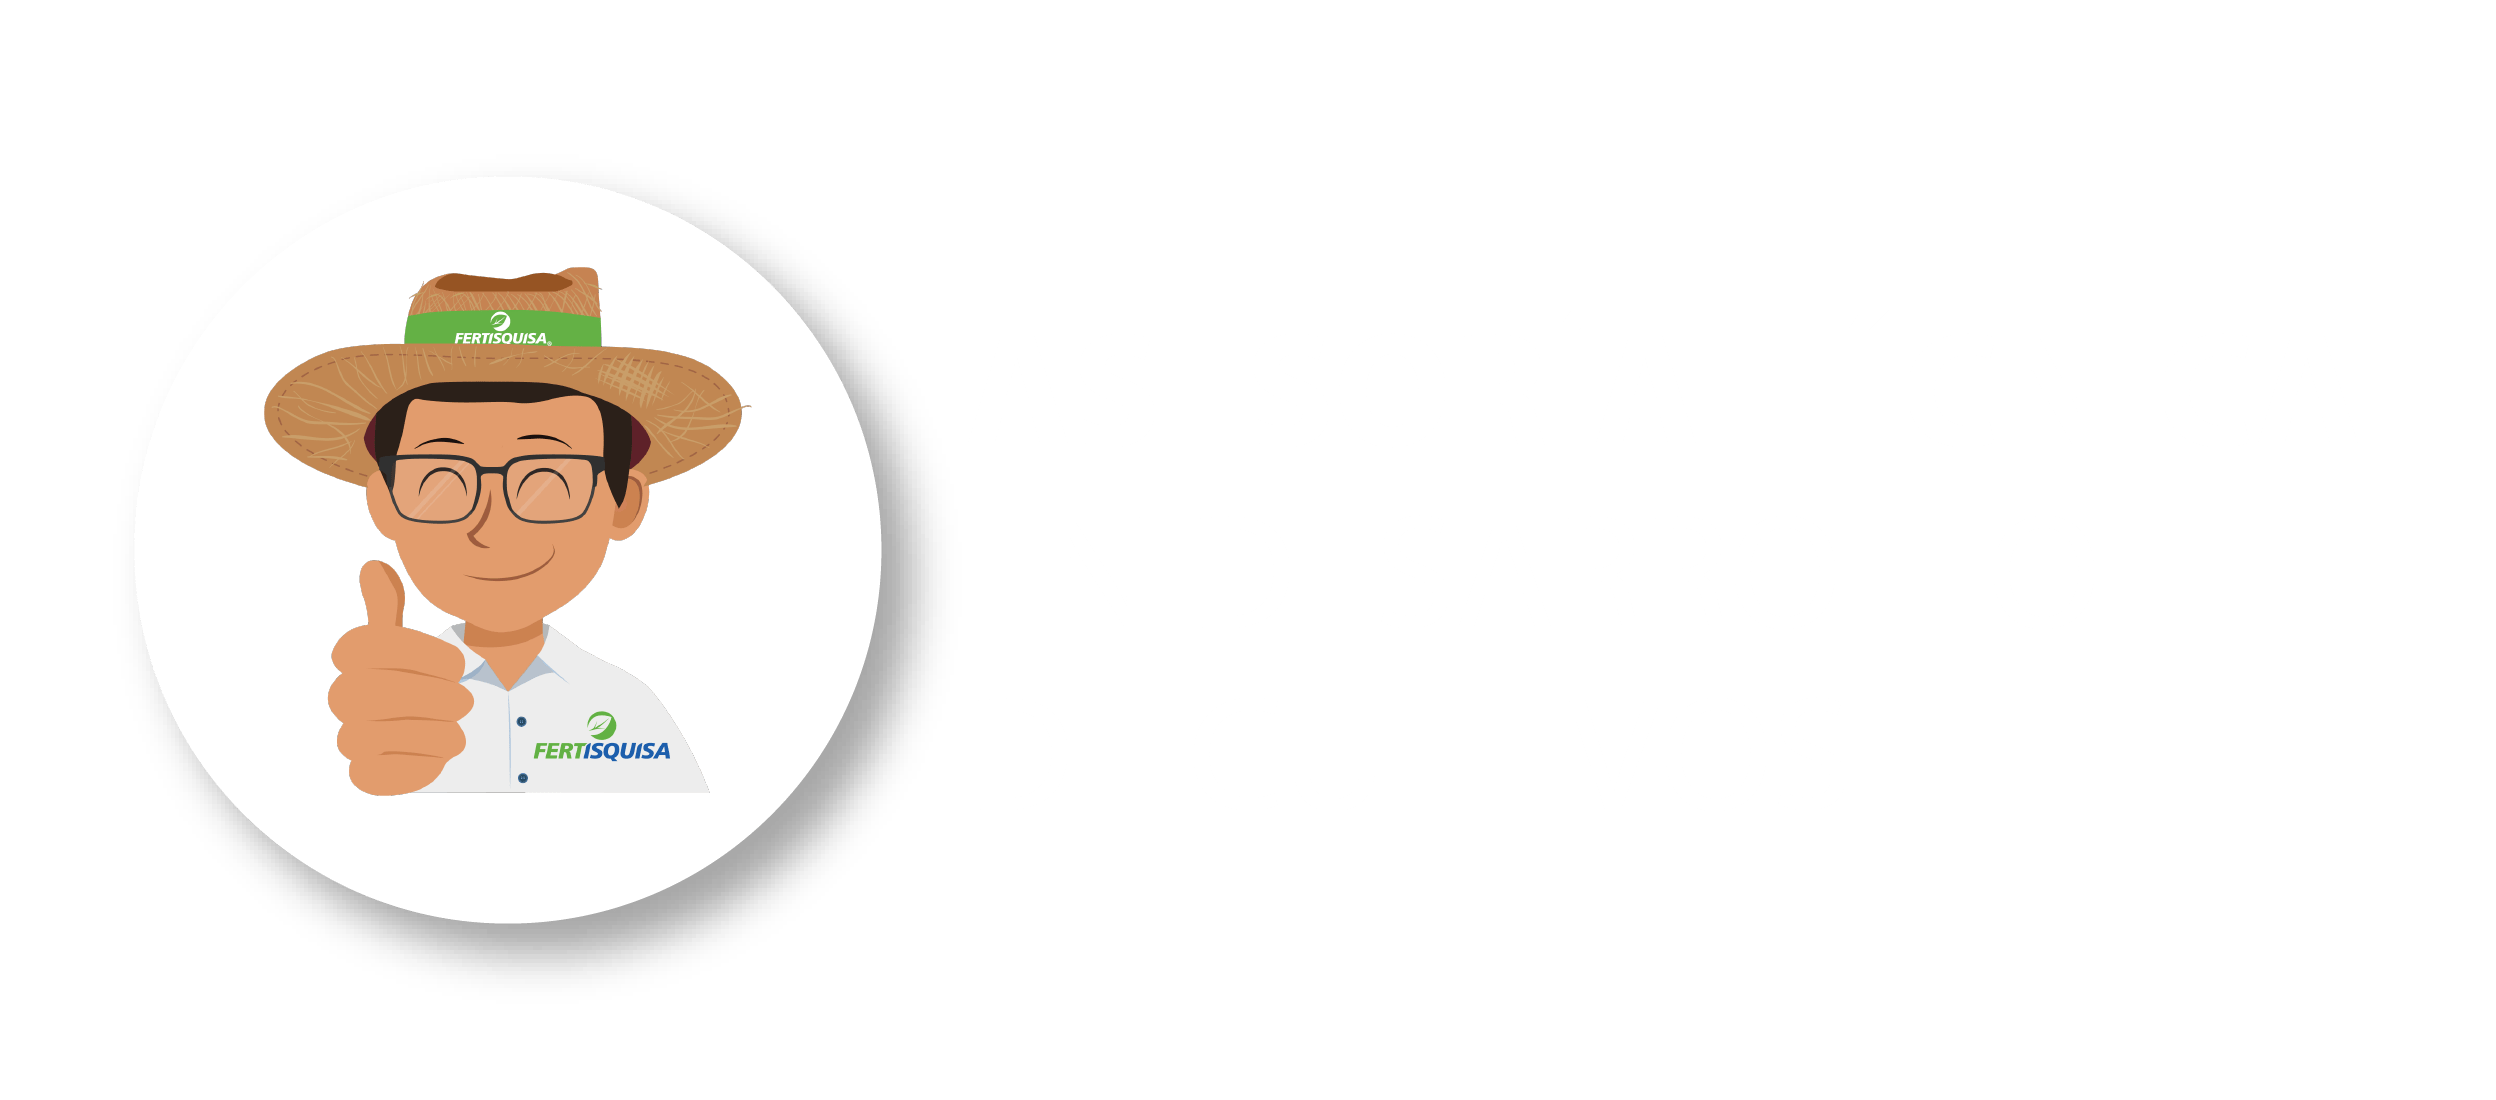 ASESORÍA TÉCNICA EN DESARROLLO DE CULTIVOS